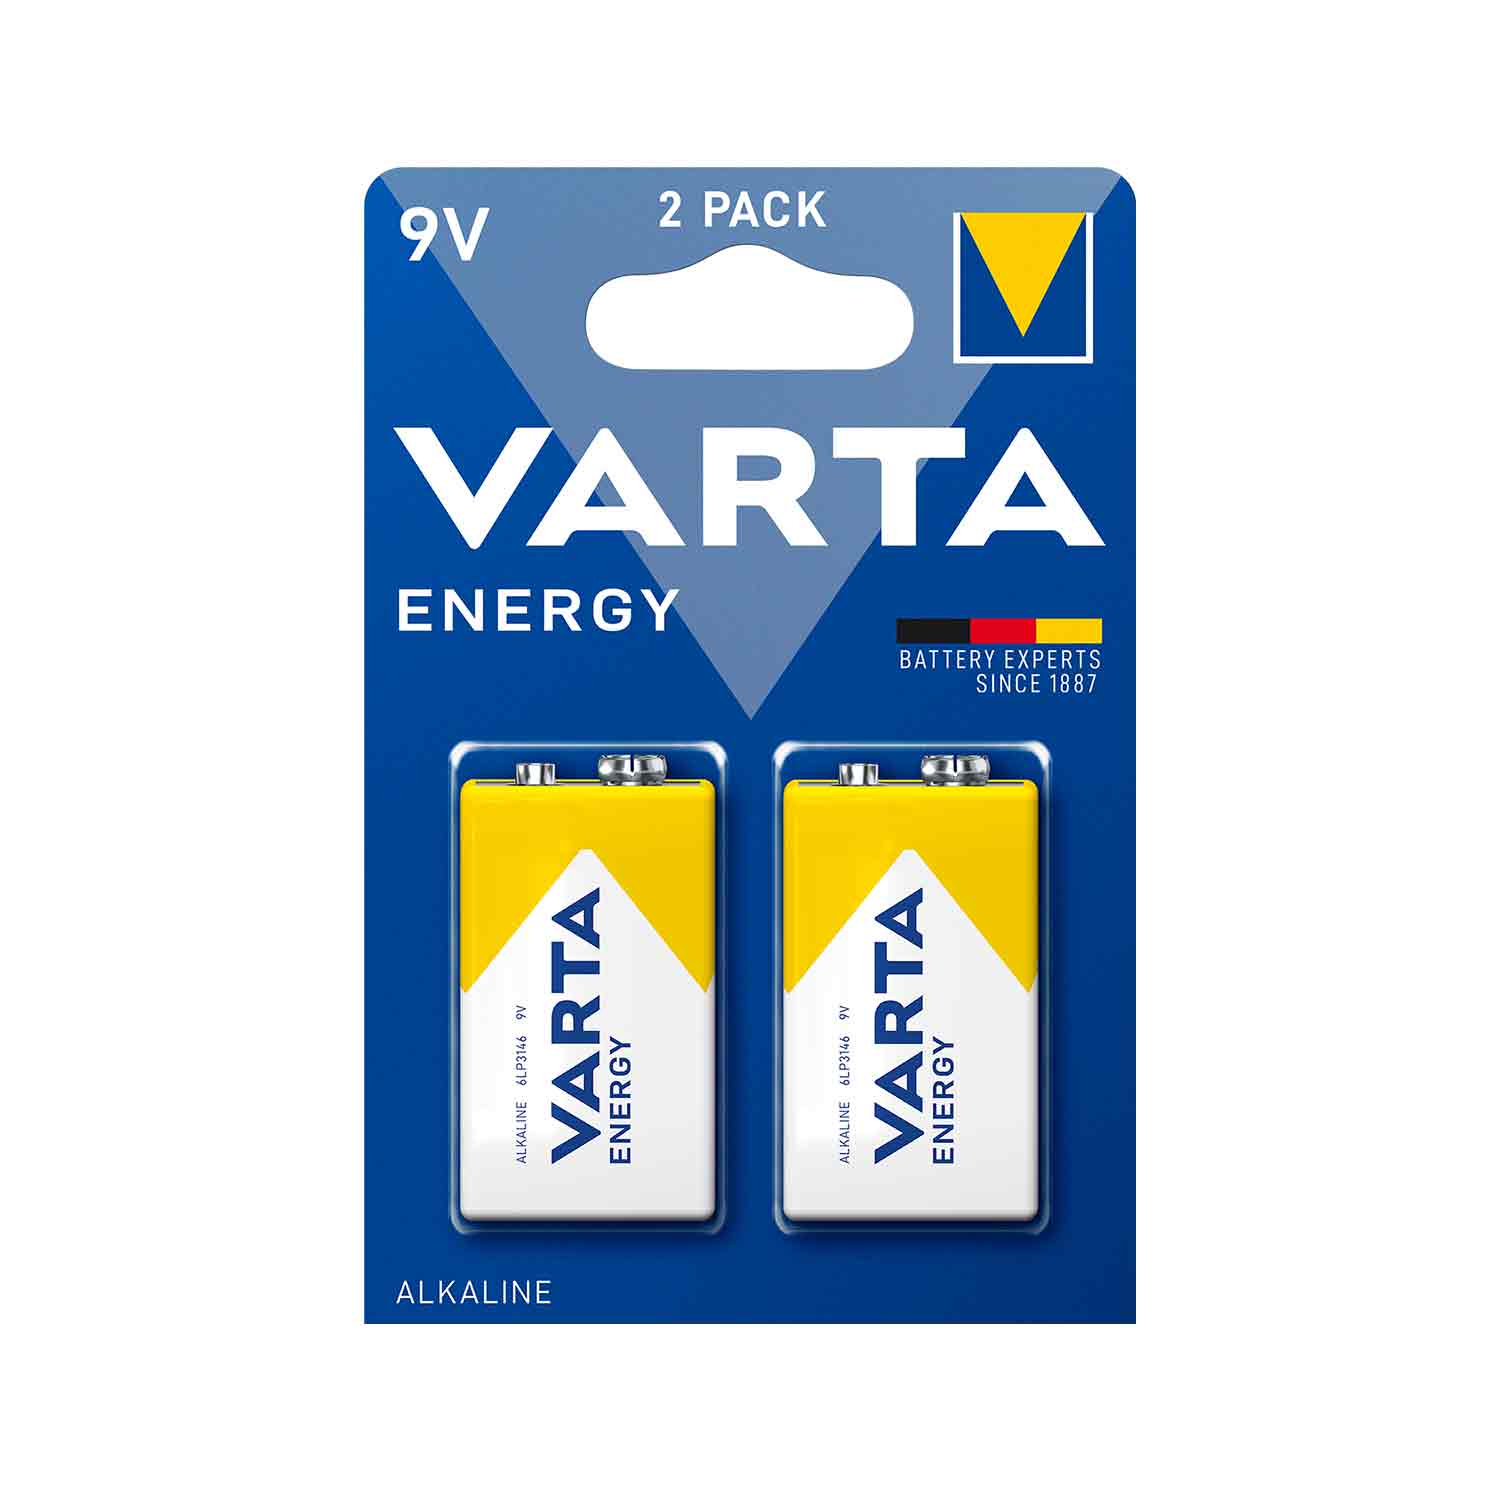 VARTA Batterien ENERGY 9 V Block 2 Stück